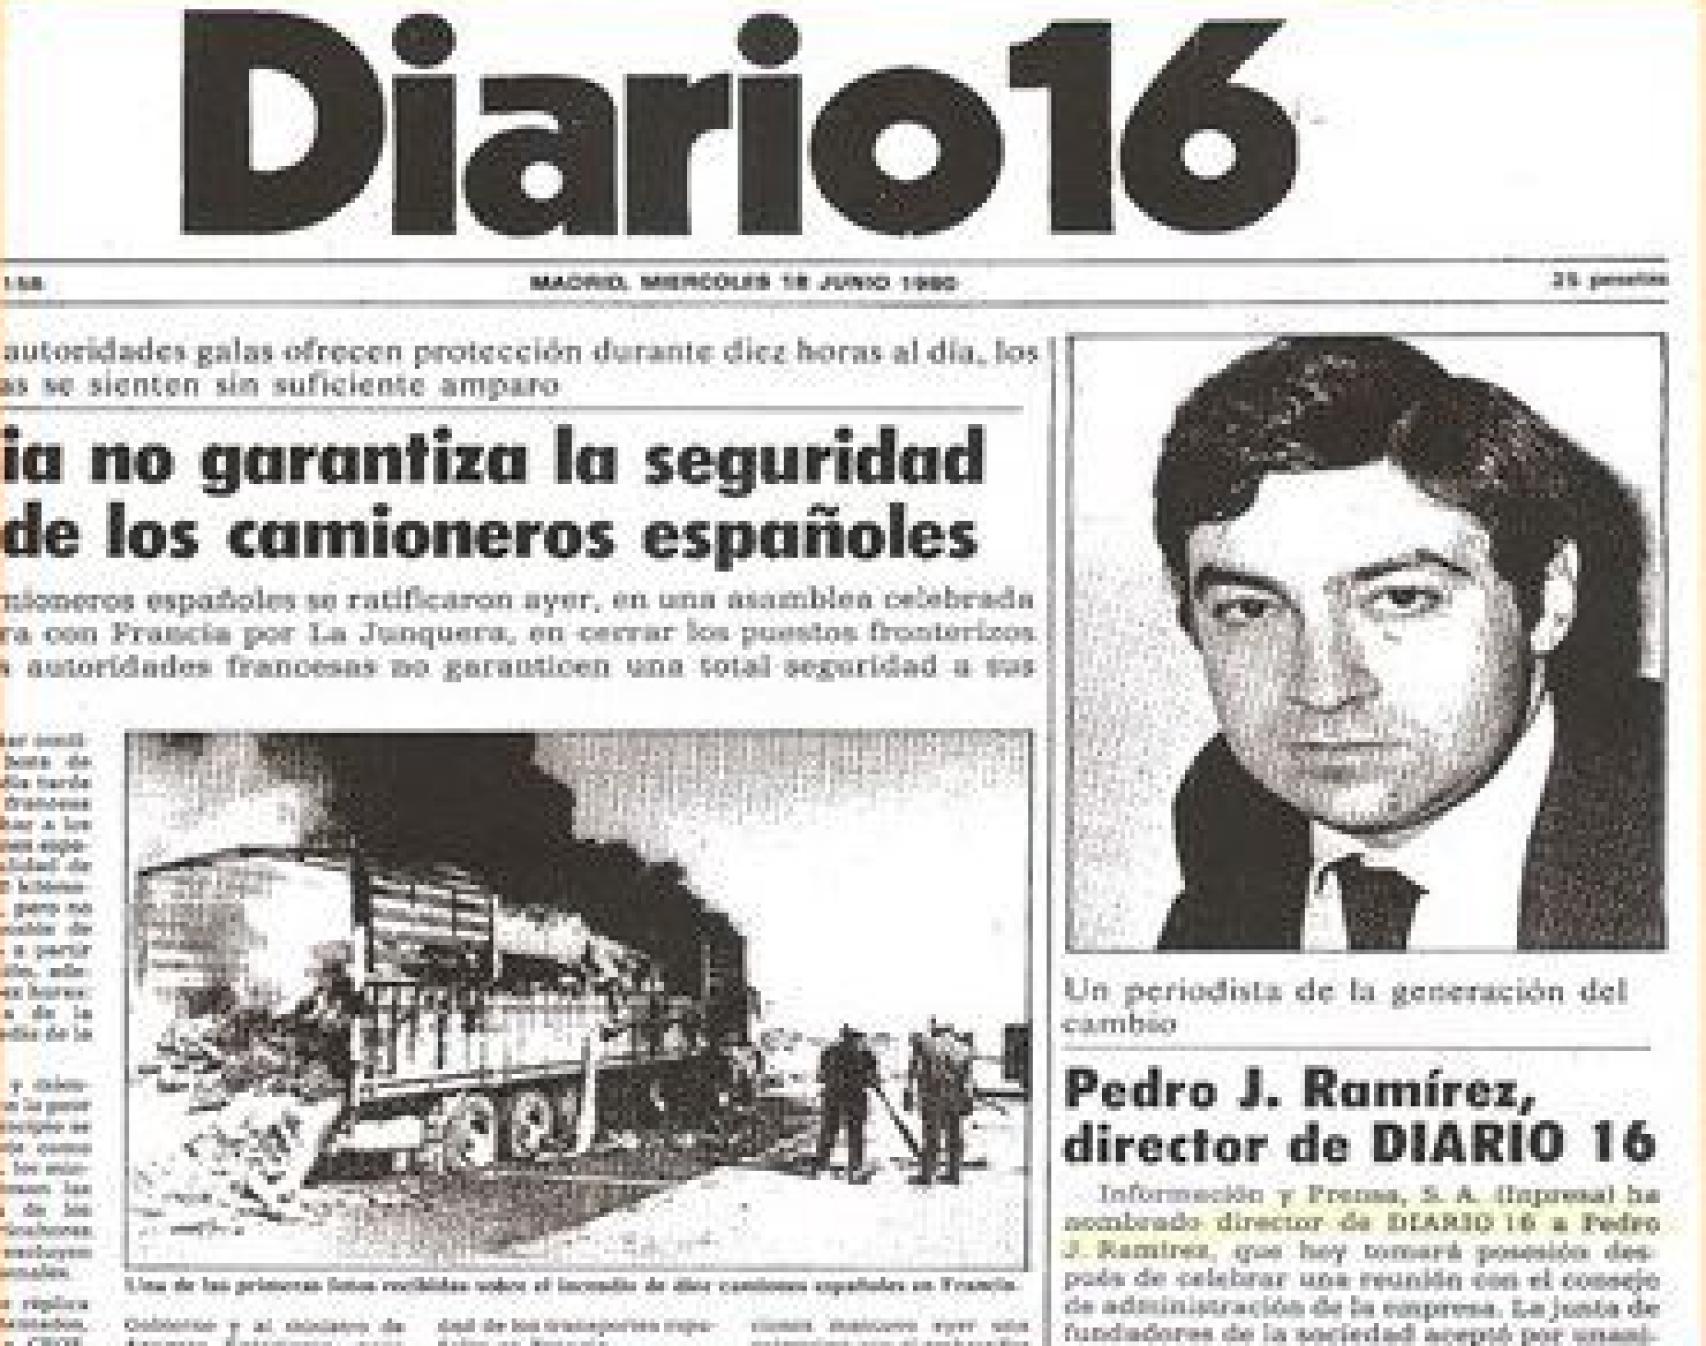 Portada de Diario 16 el 18 de junio de 1980 anunciando el nombramiento de Pedro J. Ramírez como director.